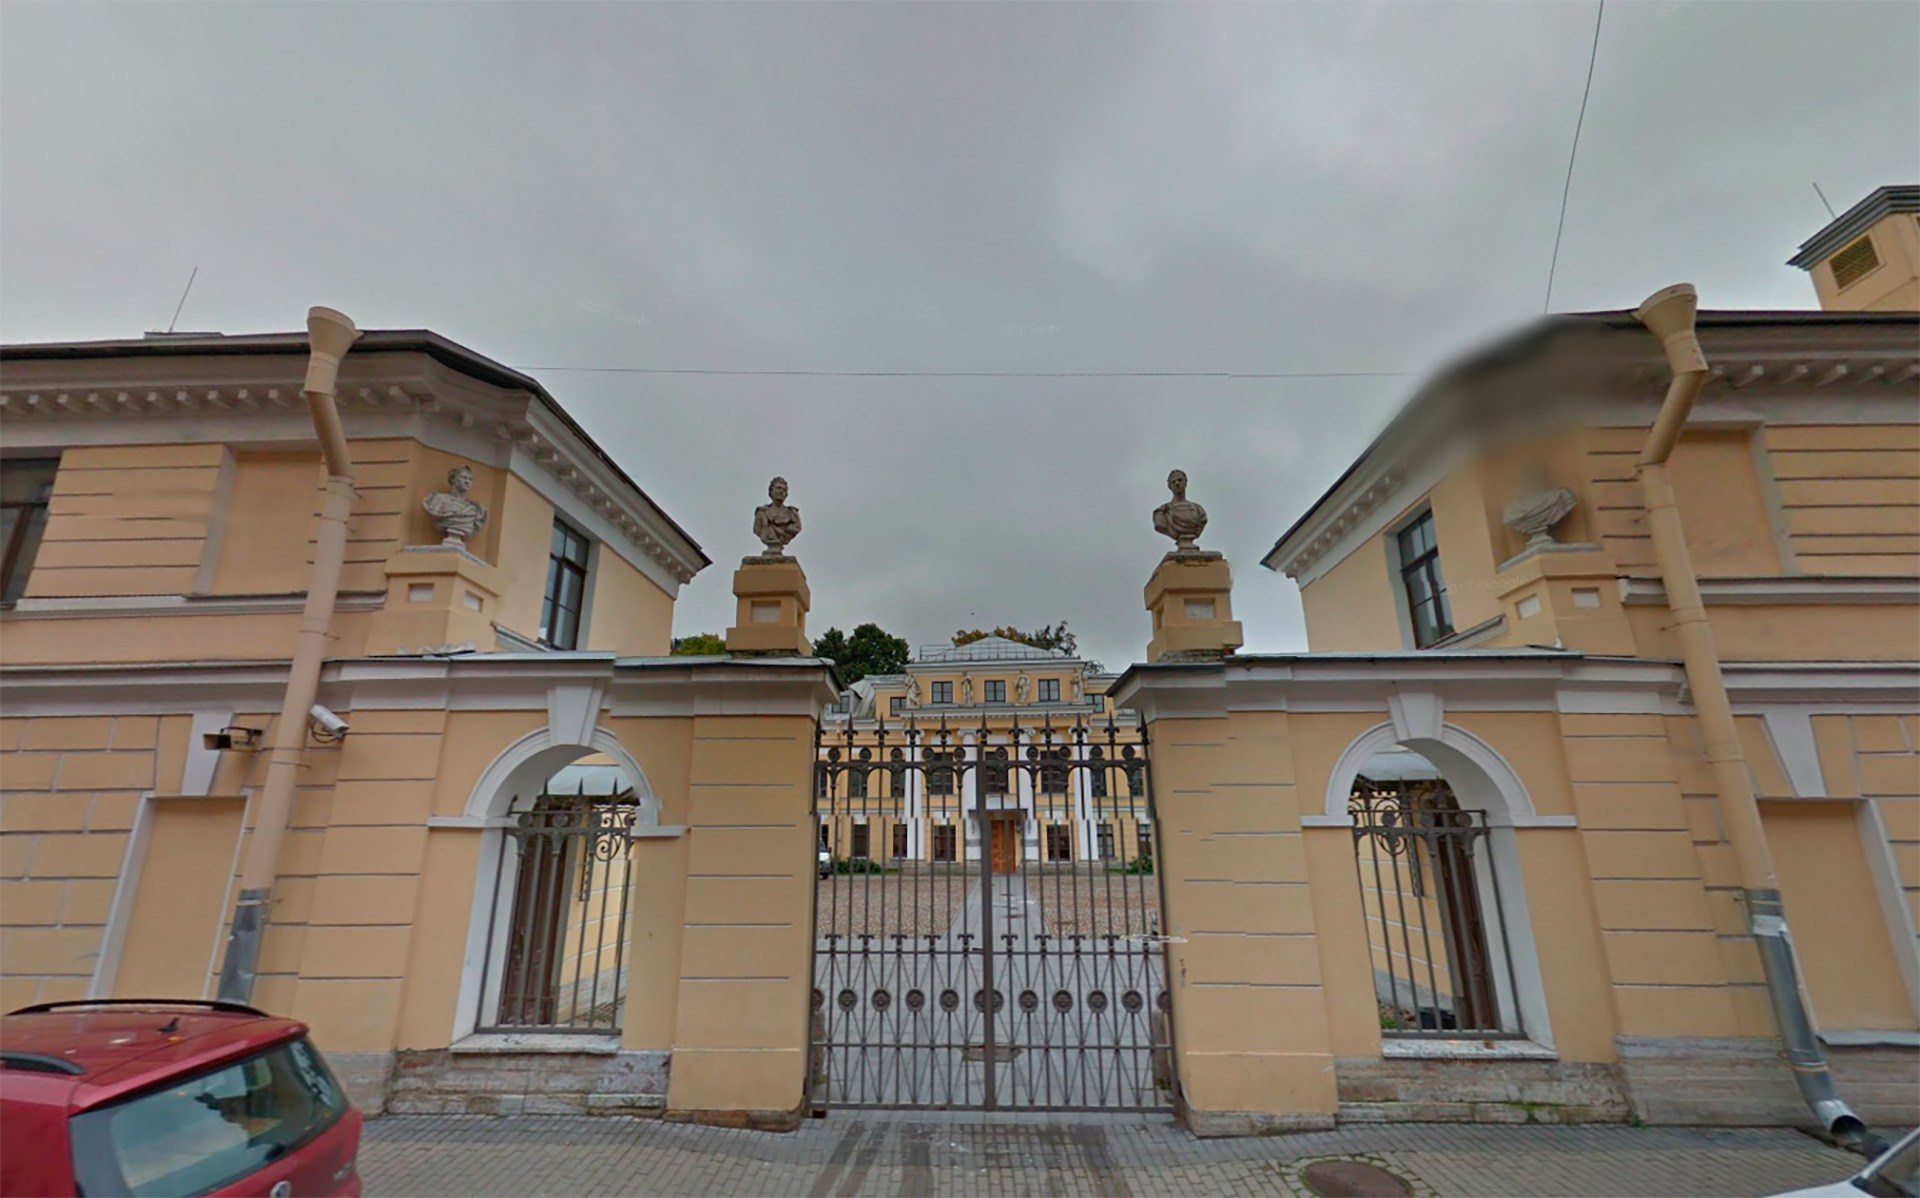 The Bobrinsky Palace / GoogleMaps